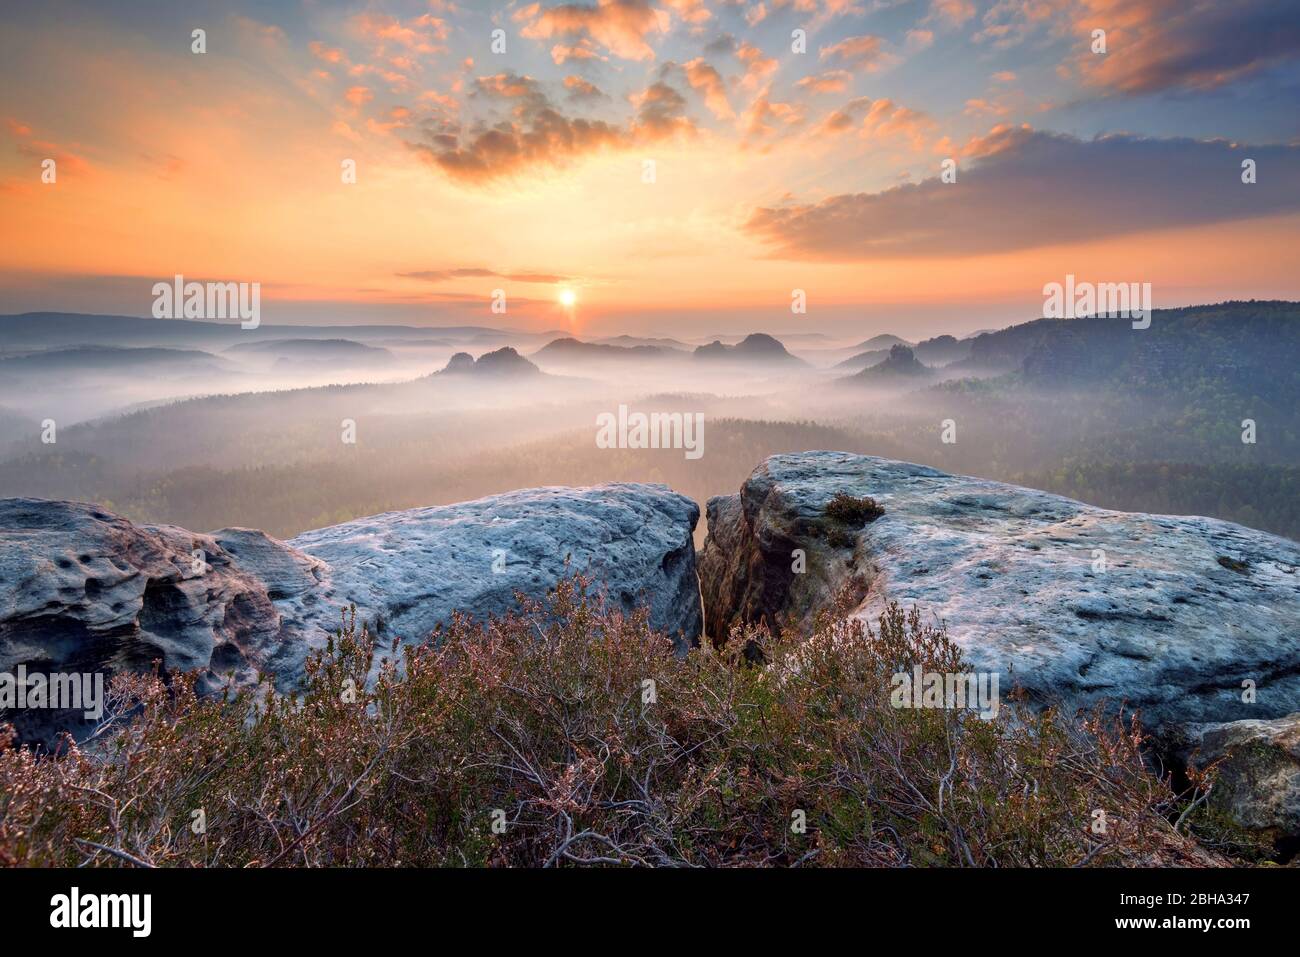 Sonnenaufgang, Nebel, Kleiner Winterberg, Sächsische Schweiz, Mittelgebirge, Deutschland, Europa Banque D'Images